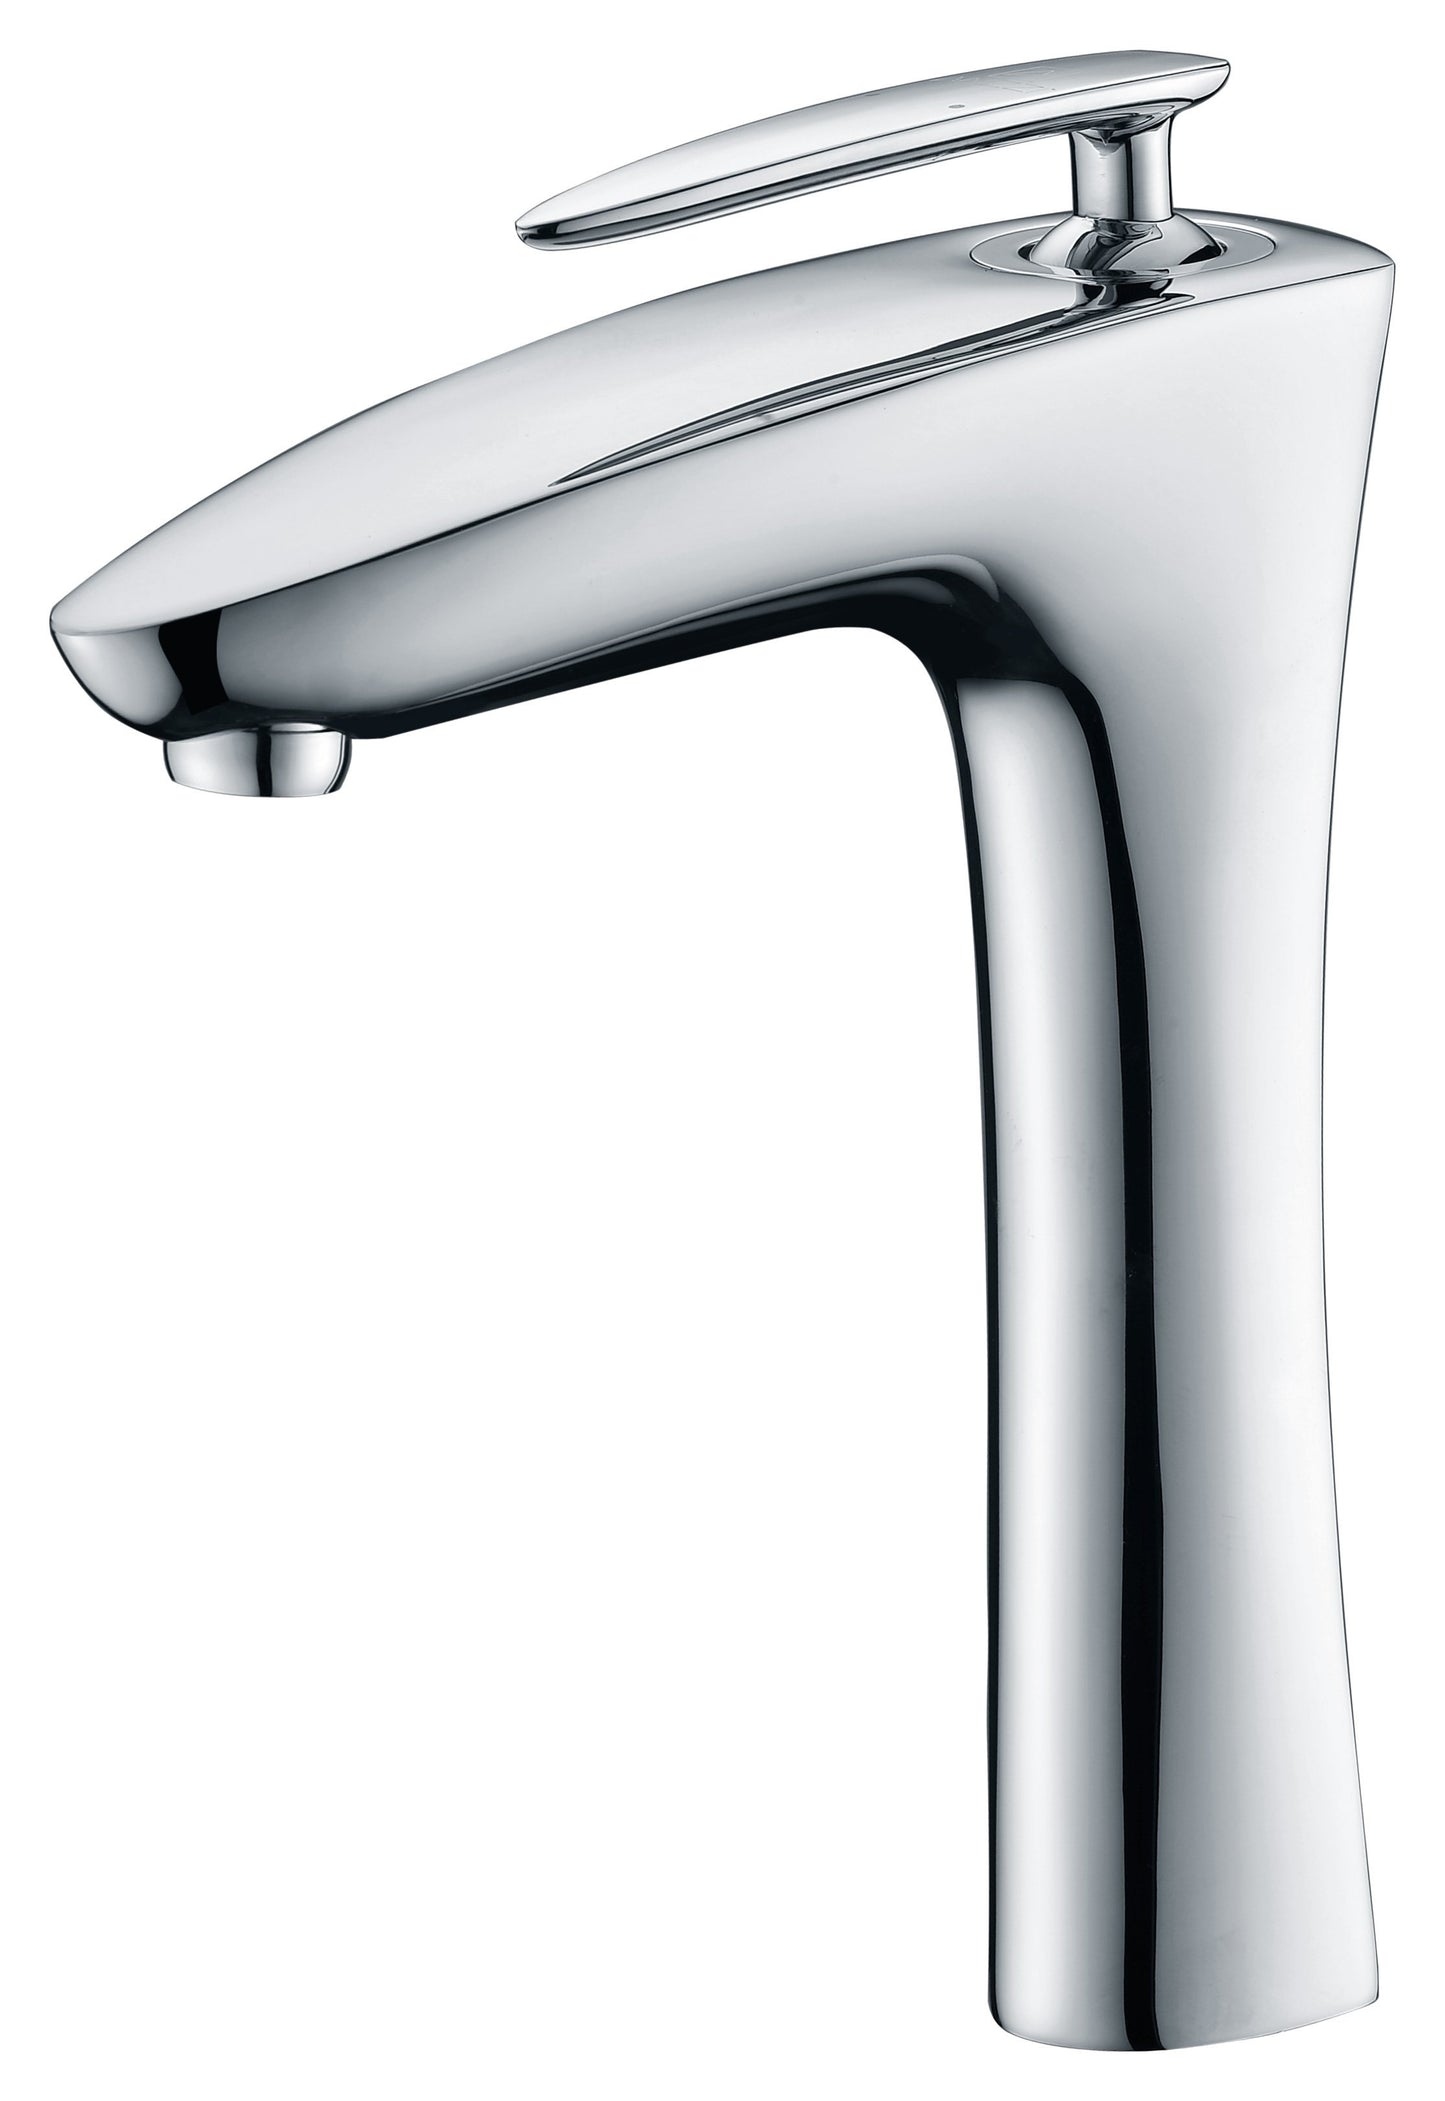 Crown Series Single Handle Vessel Sink Faucet in Polished Chrome - Luxe Bathroom Vanities